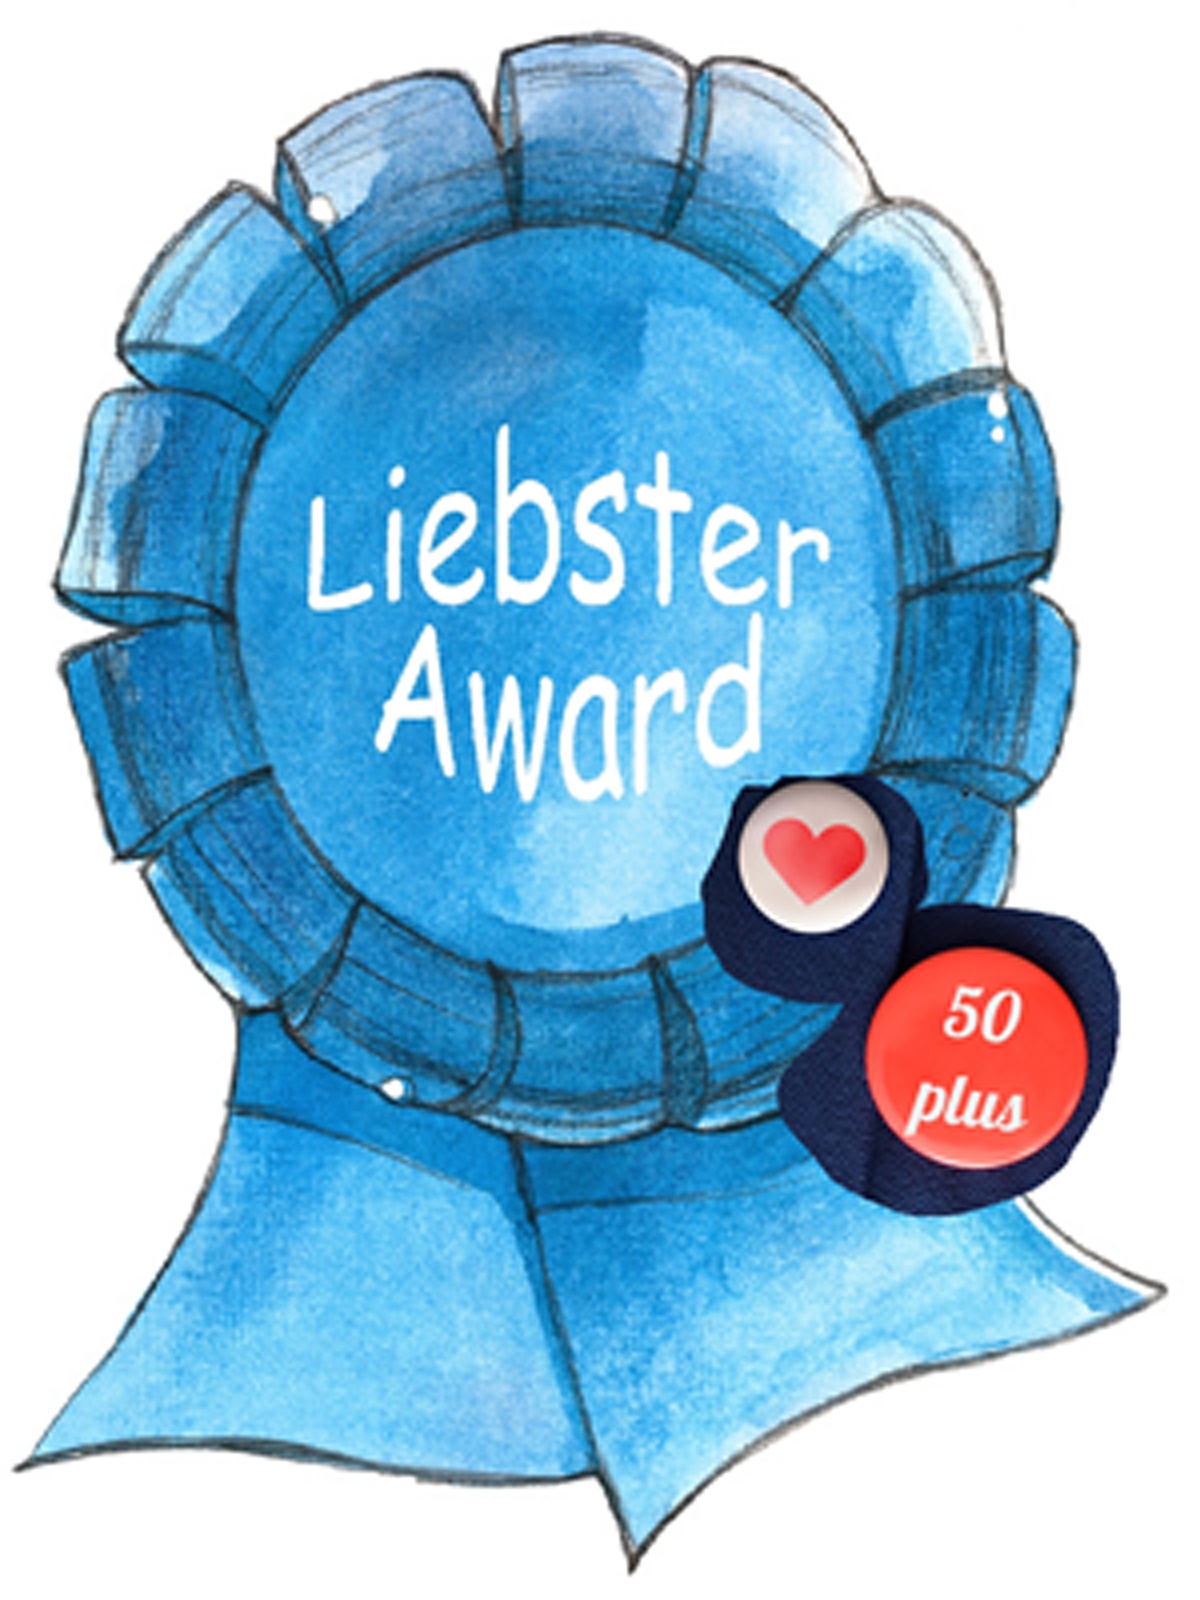 Liebster Award 50plus